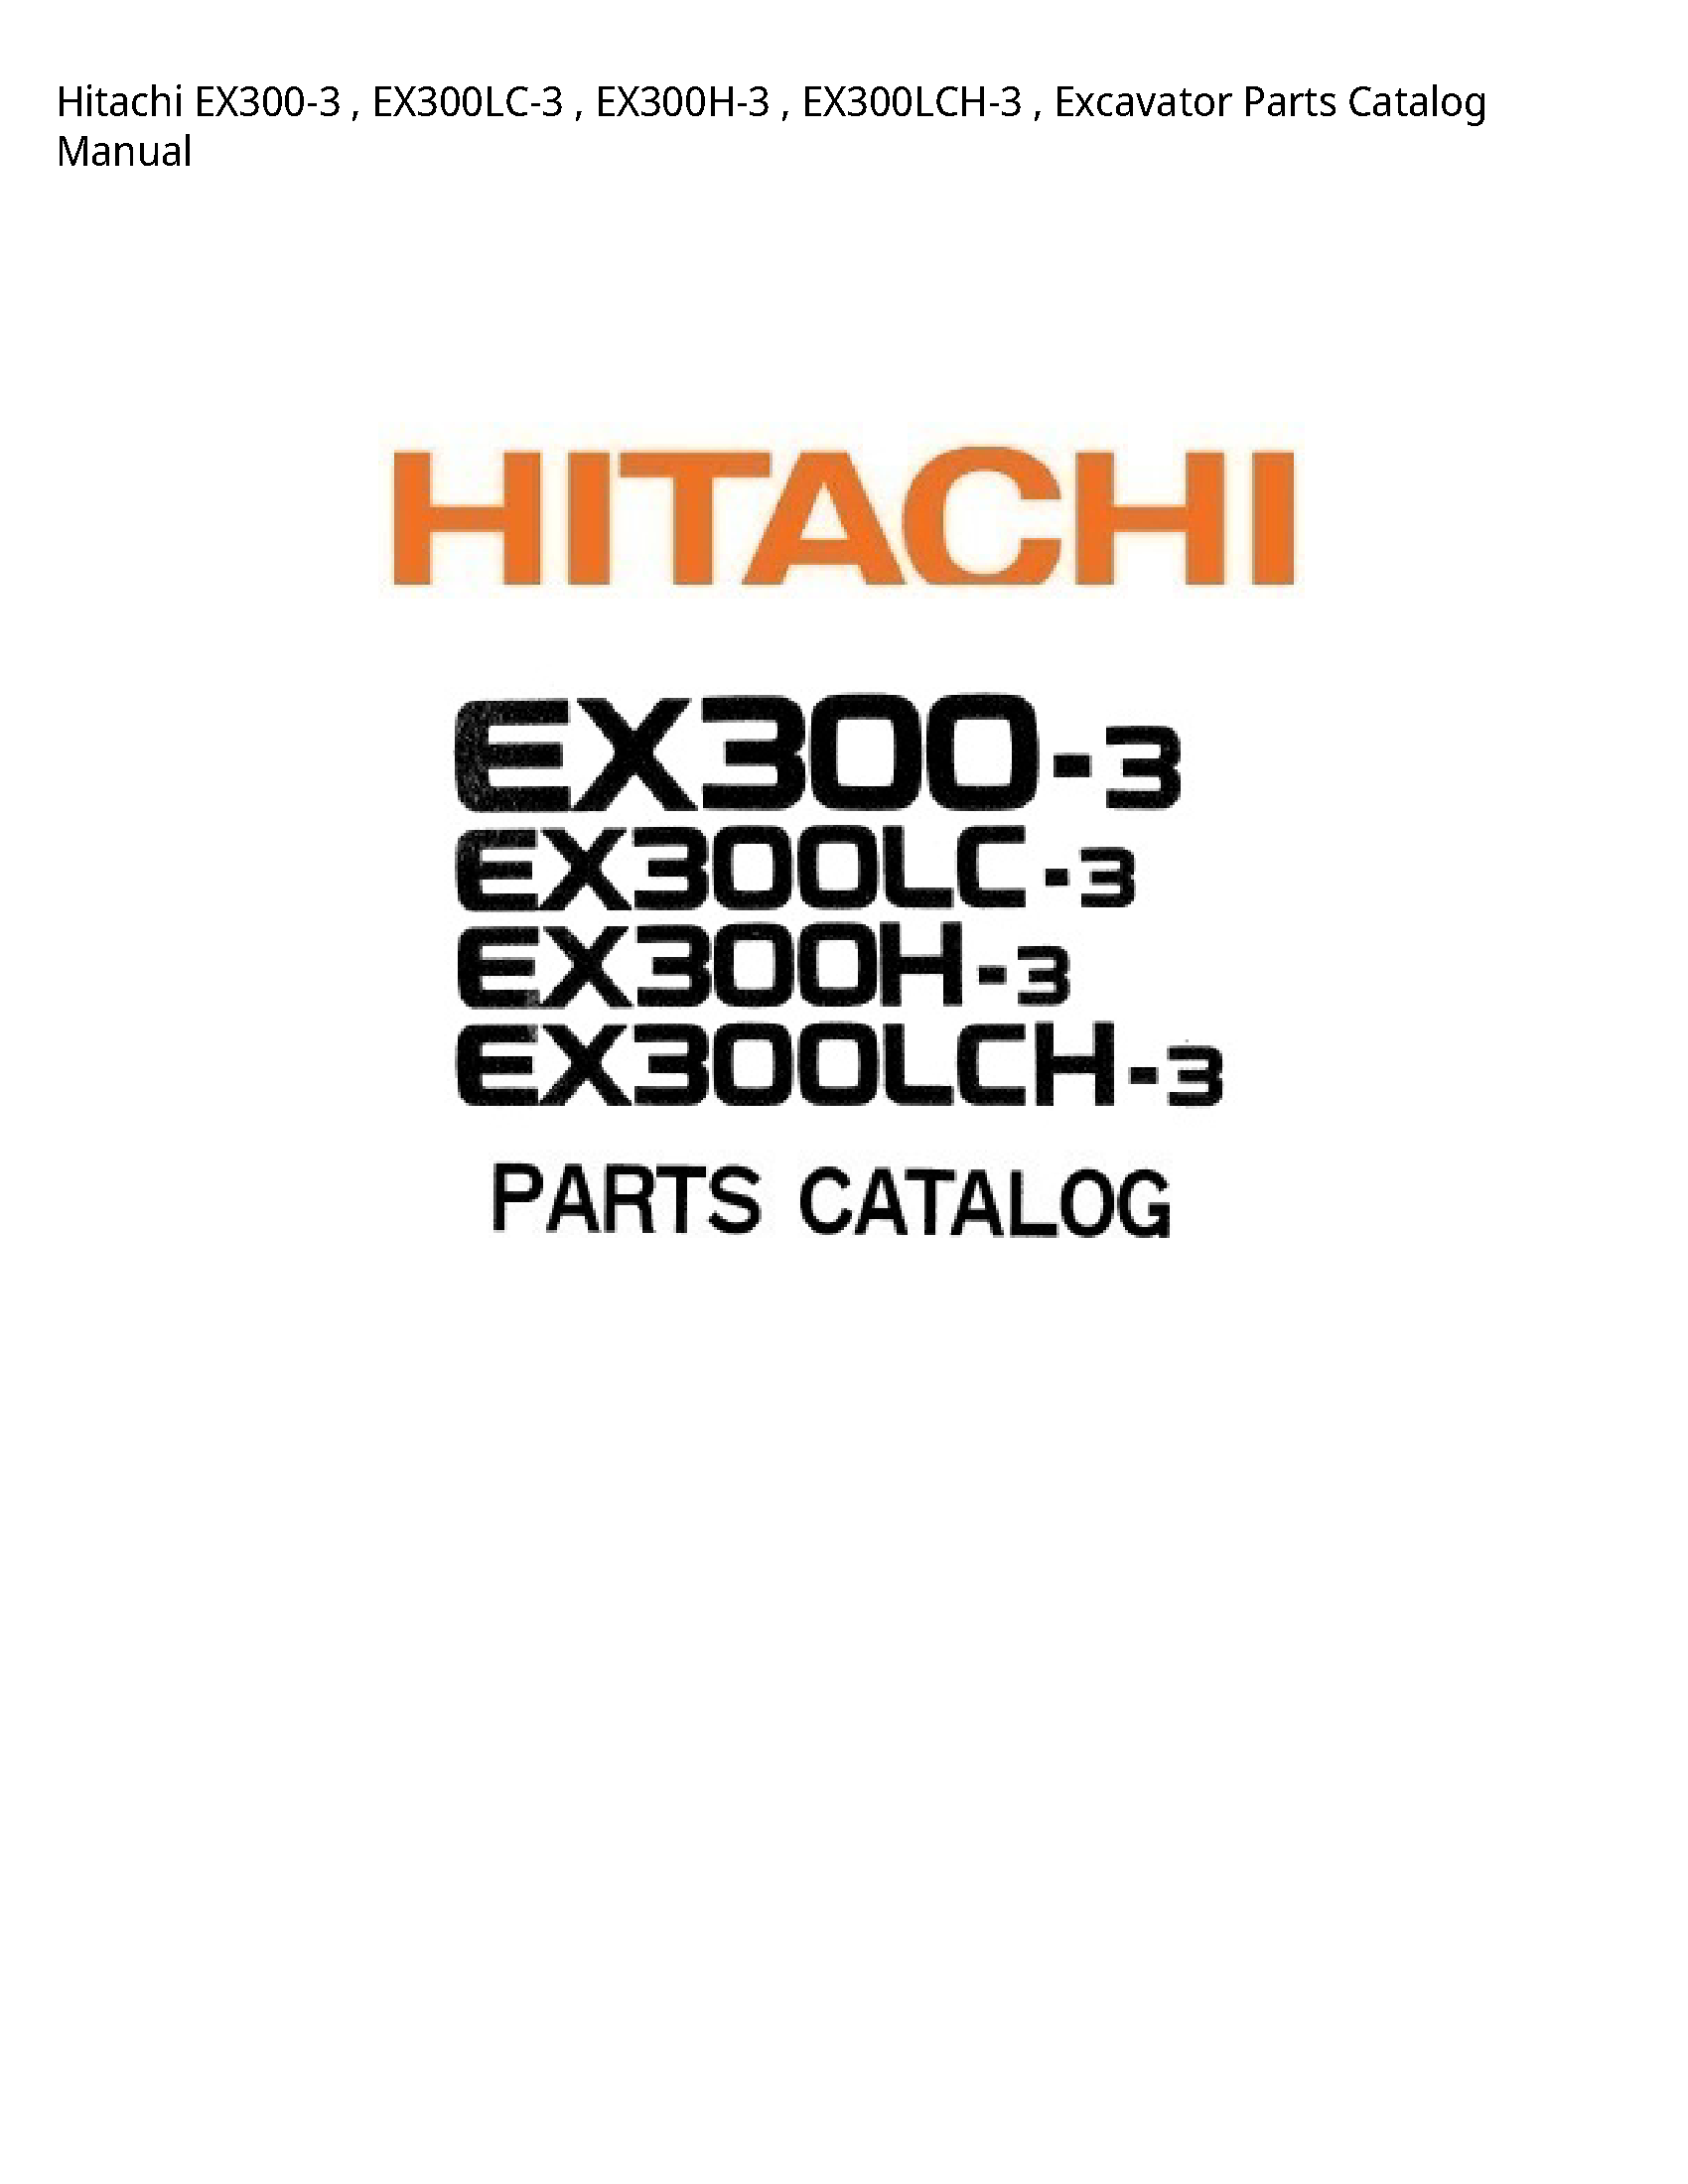 Hitachi EX300-3 Excavator Parts Catalog manual